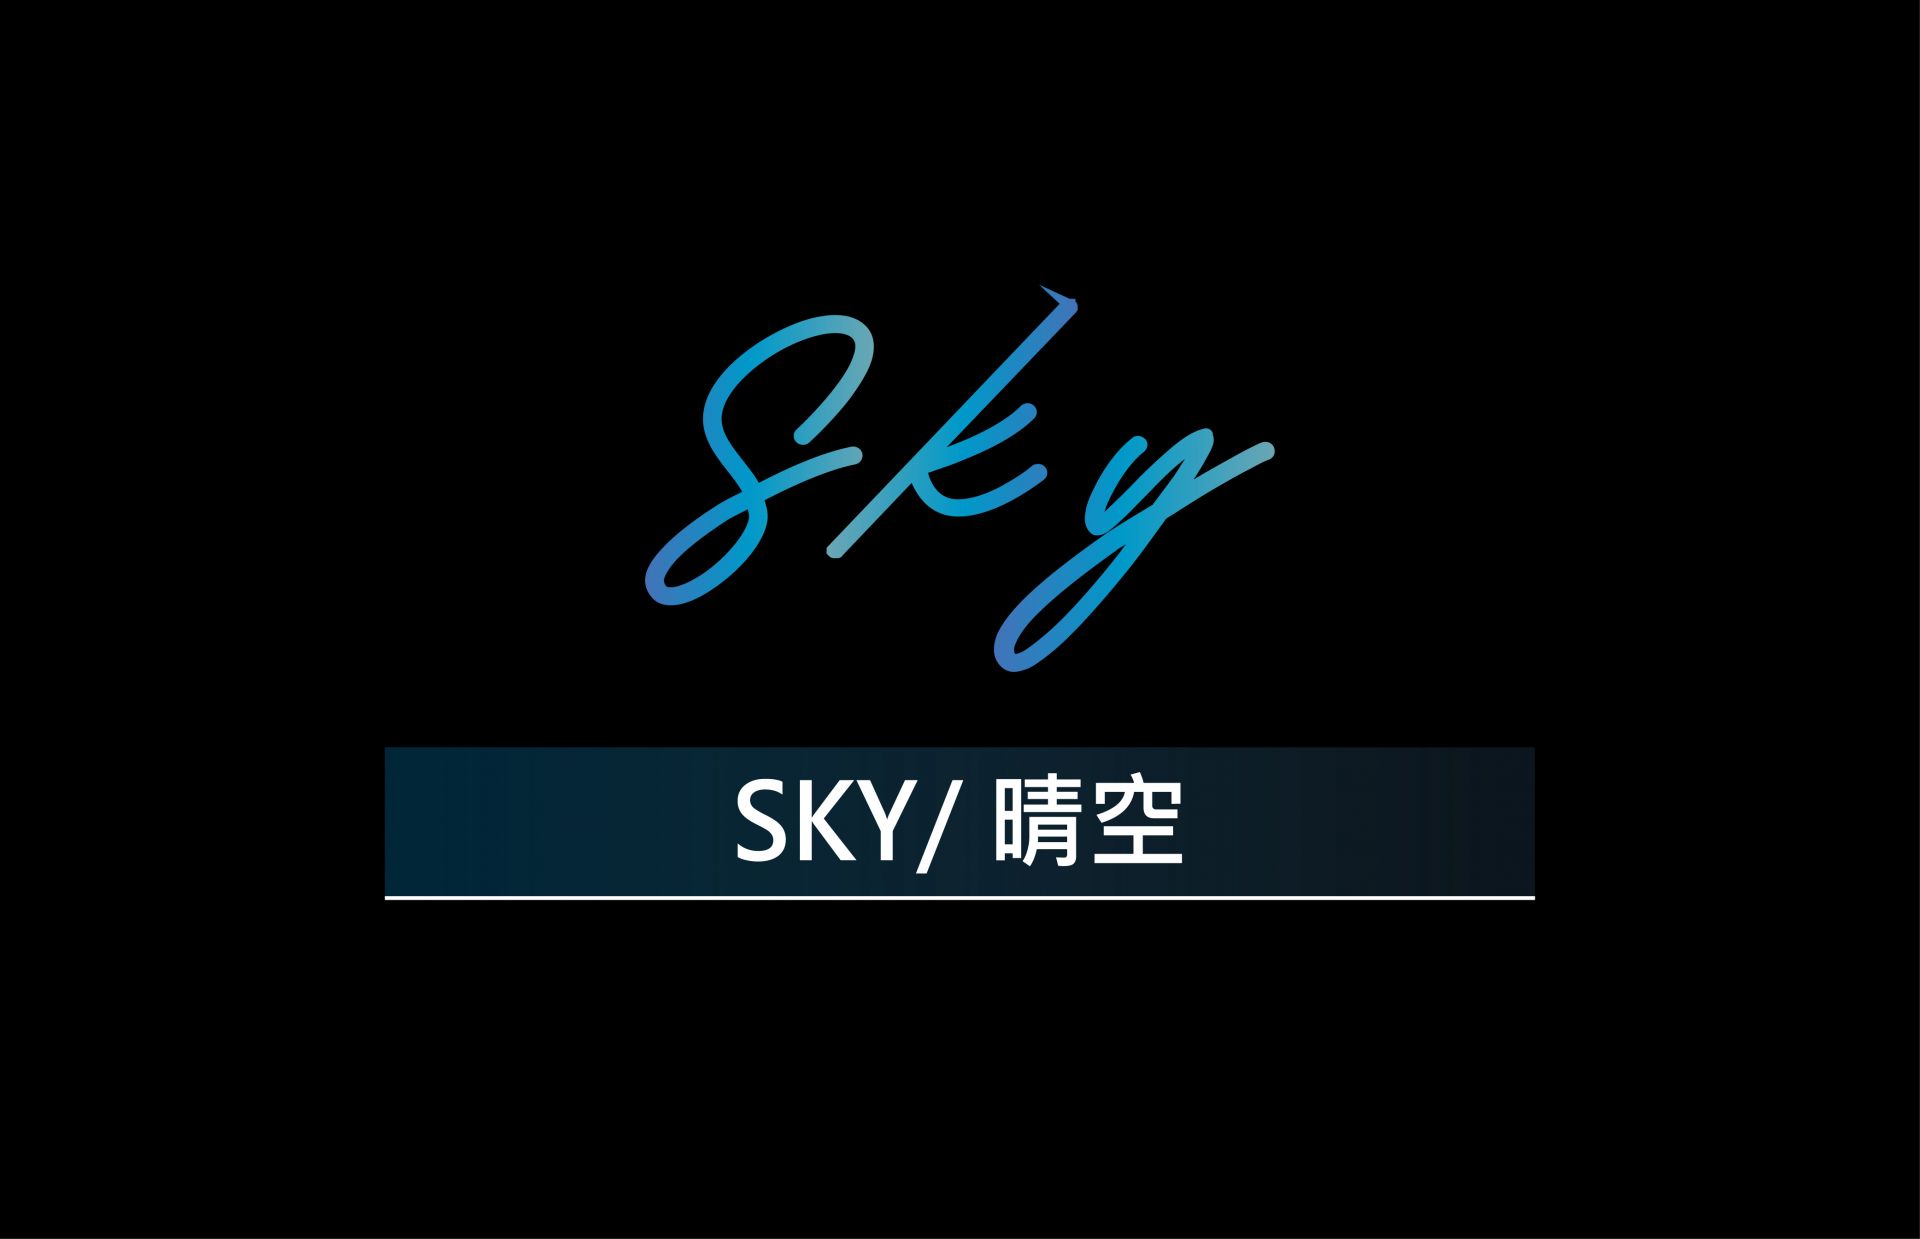 SKY / 晴空